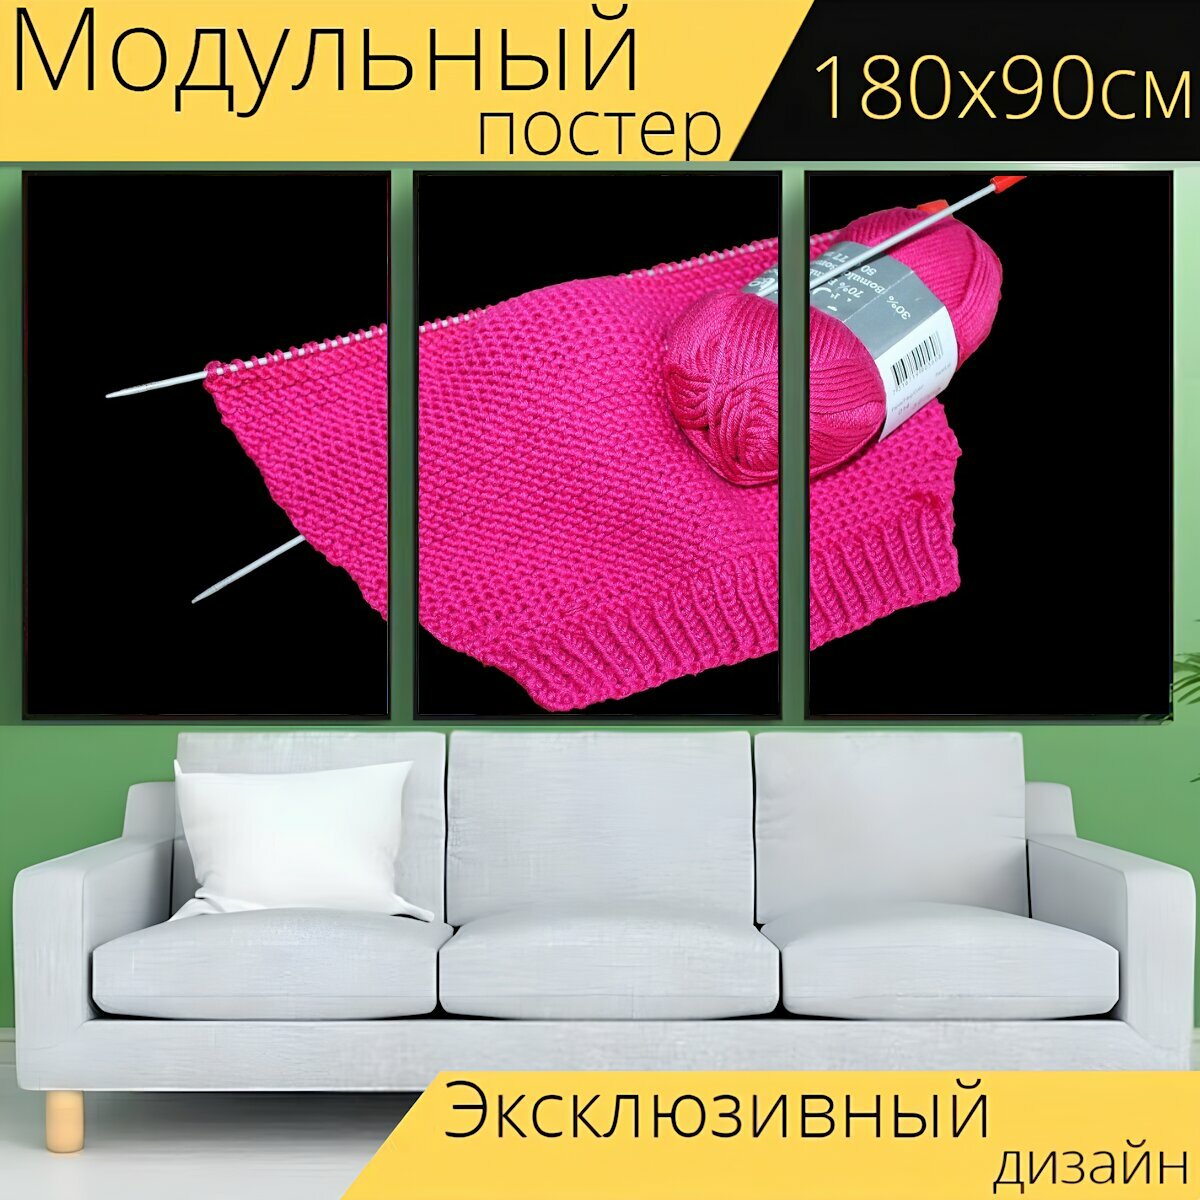 Модульный постер "Вязать, вязание, пряжа" 180 x 90 см. для интерьера